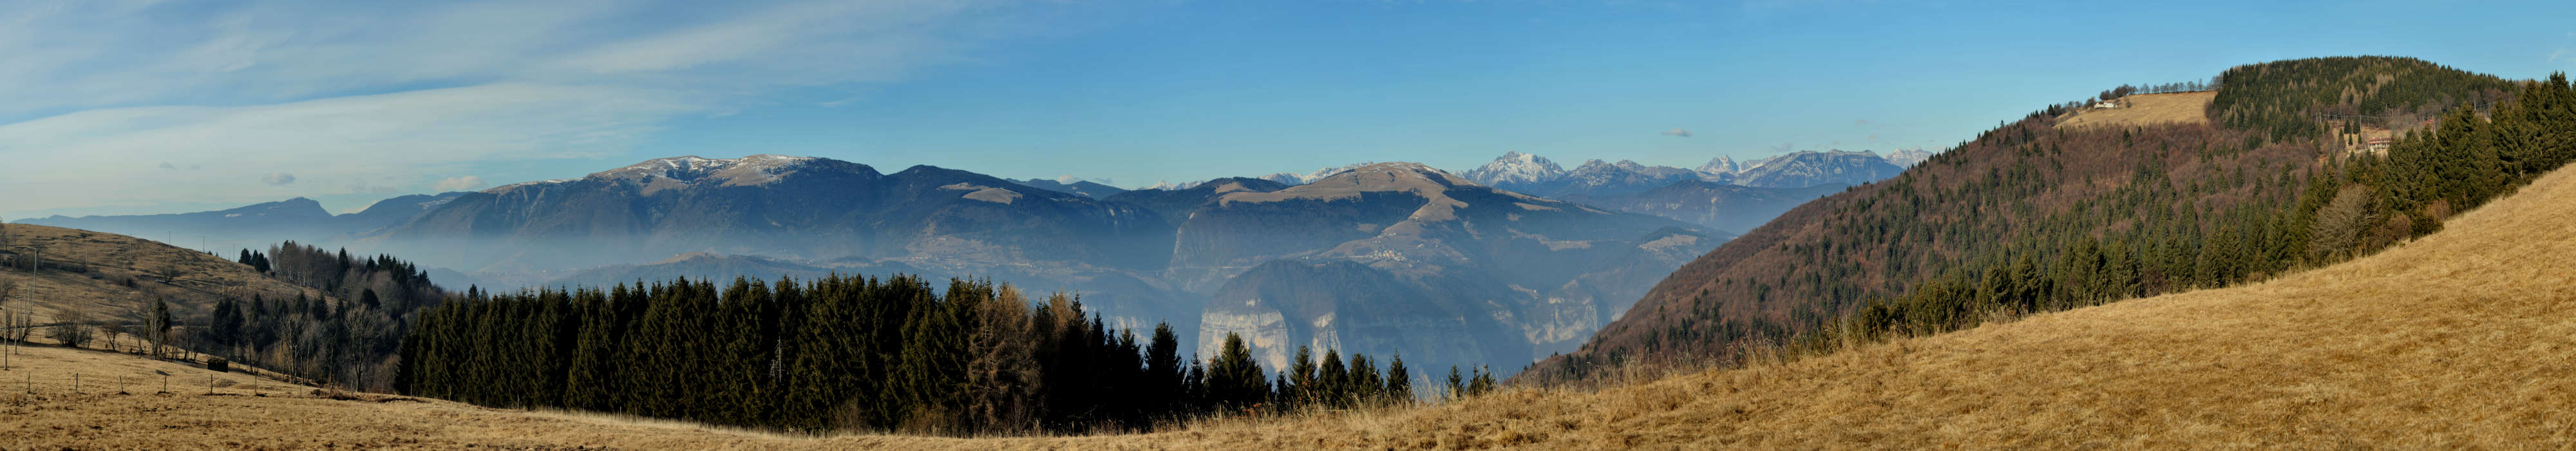 Colli Alti Col Fenilon, Monte Grappa - foto panoramica